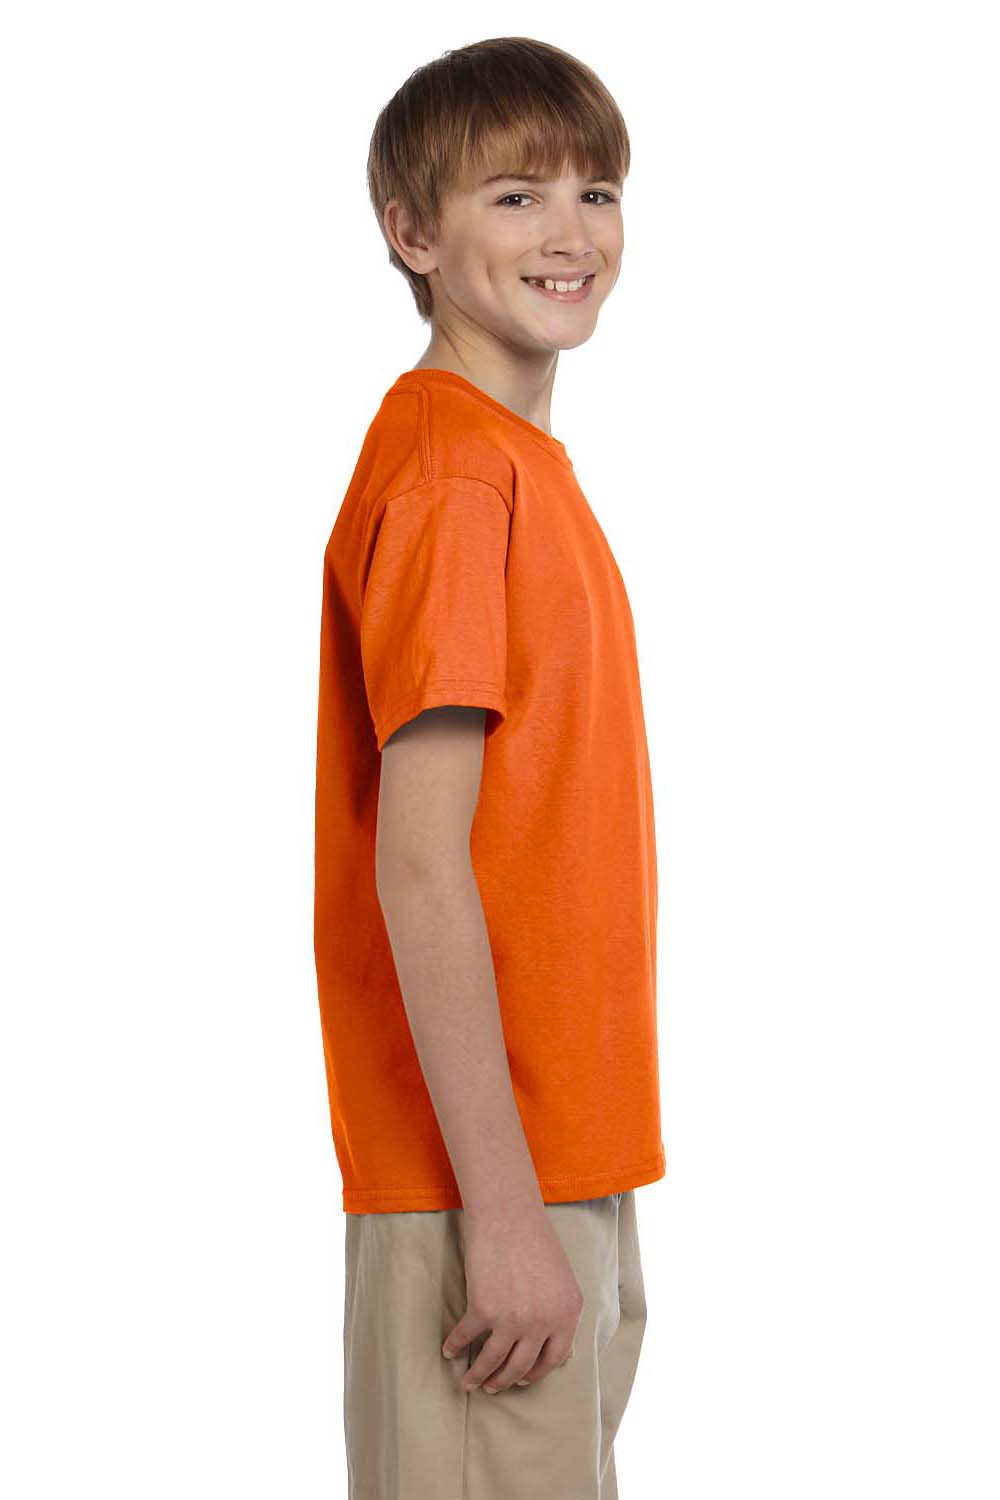 Hanes 5370 Youth EcoSmart Short Sleeve Crewneck T-Shirt Orange Side